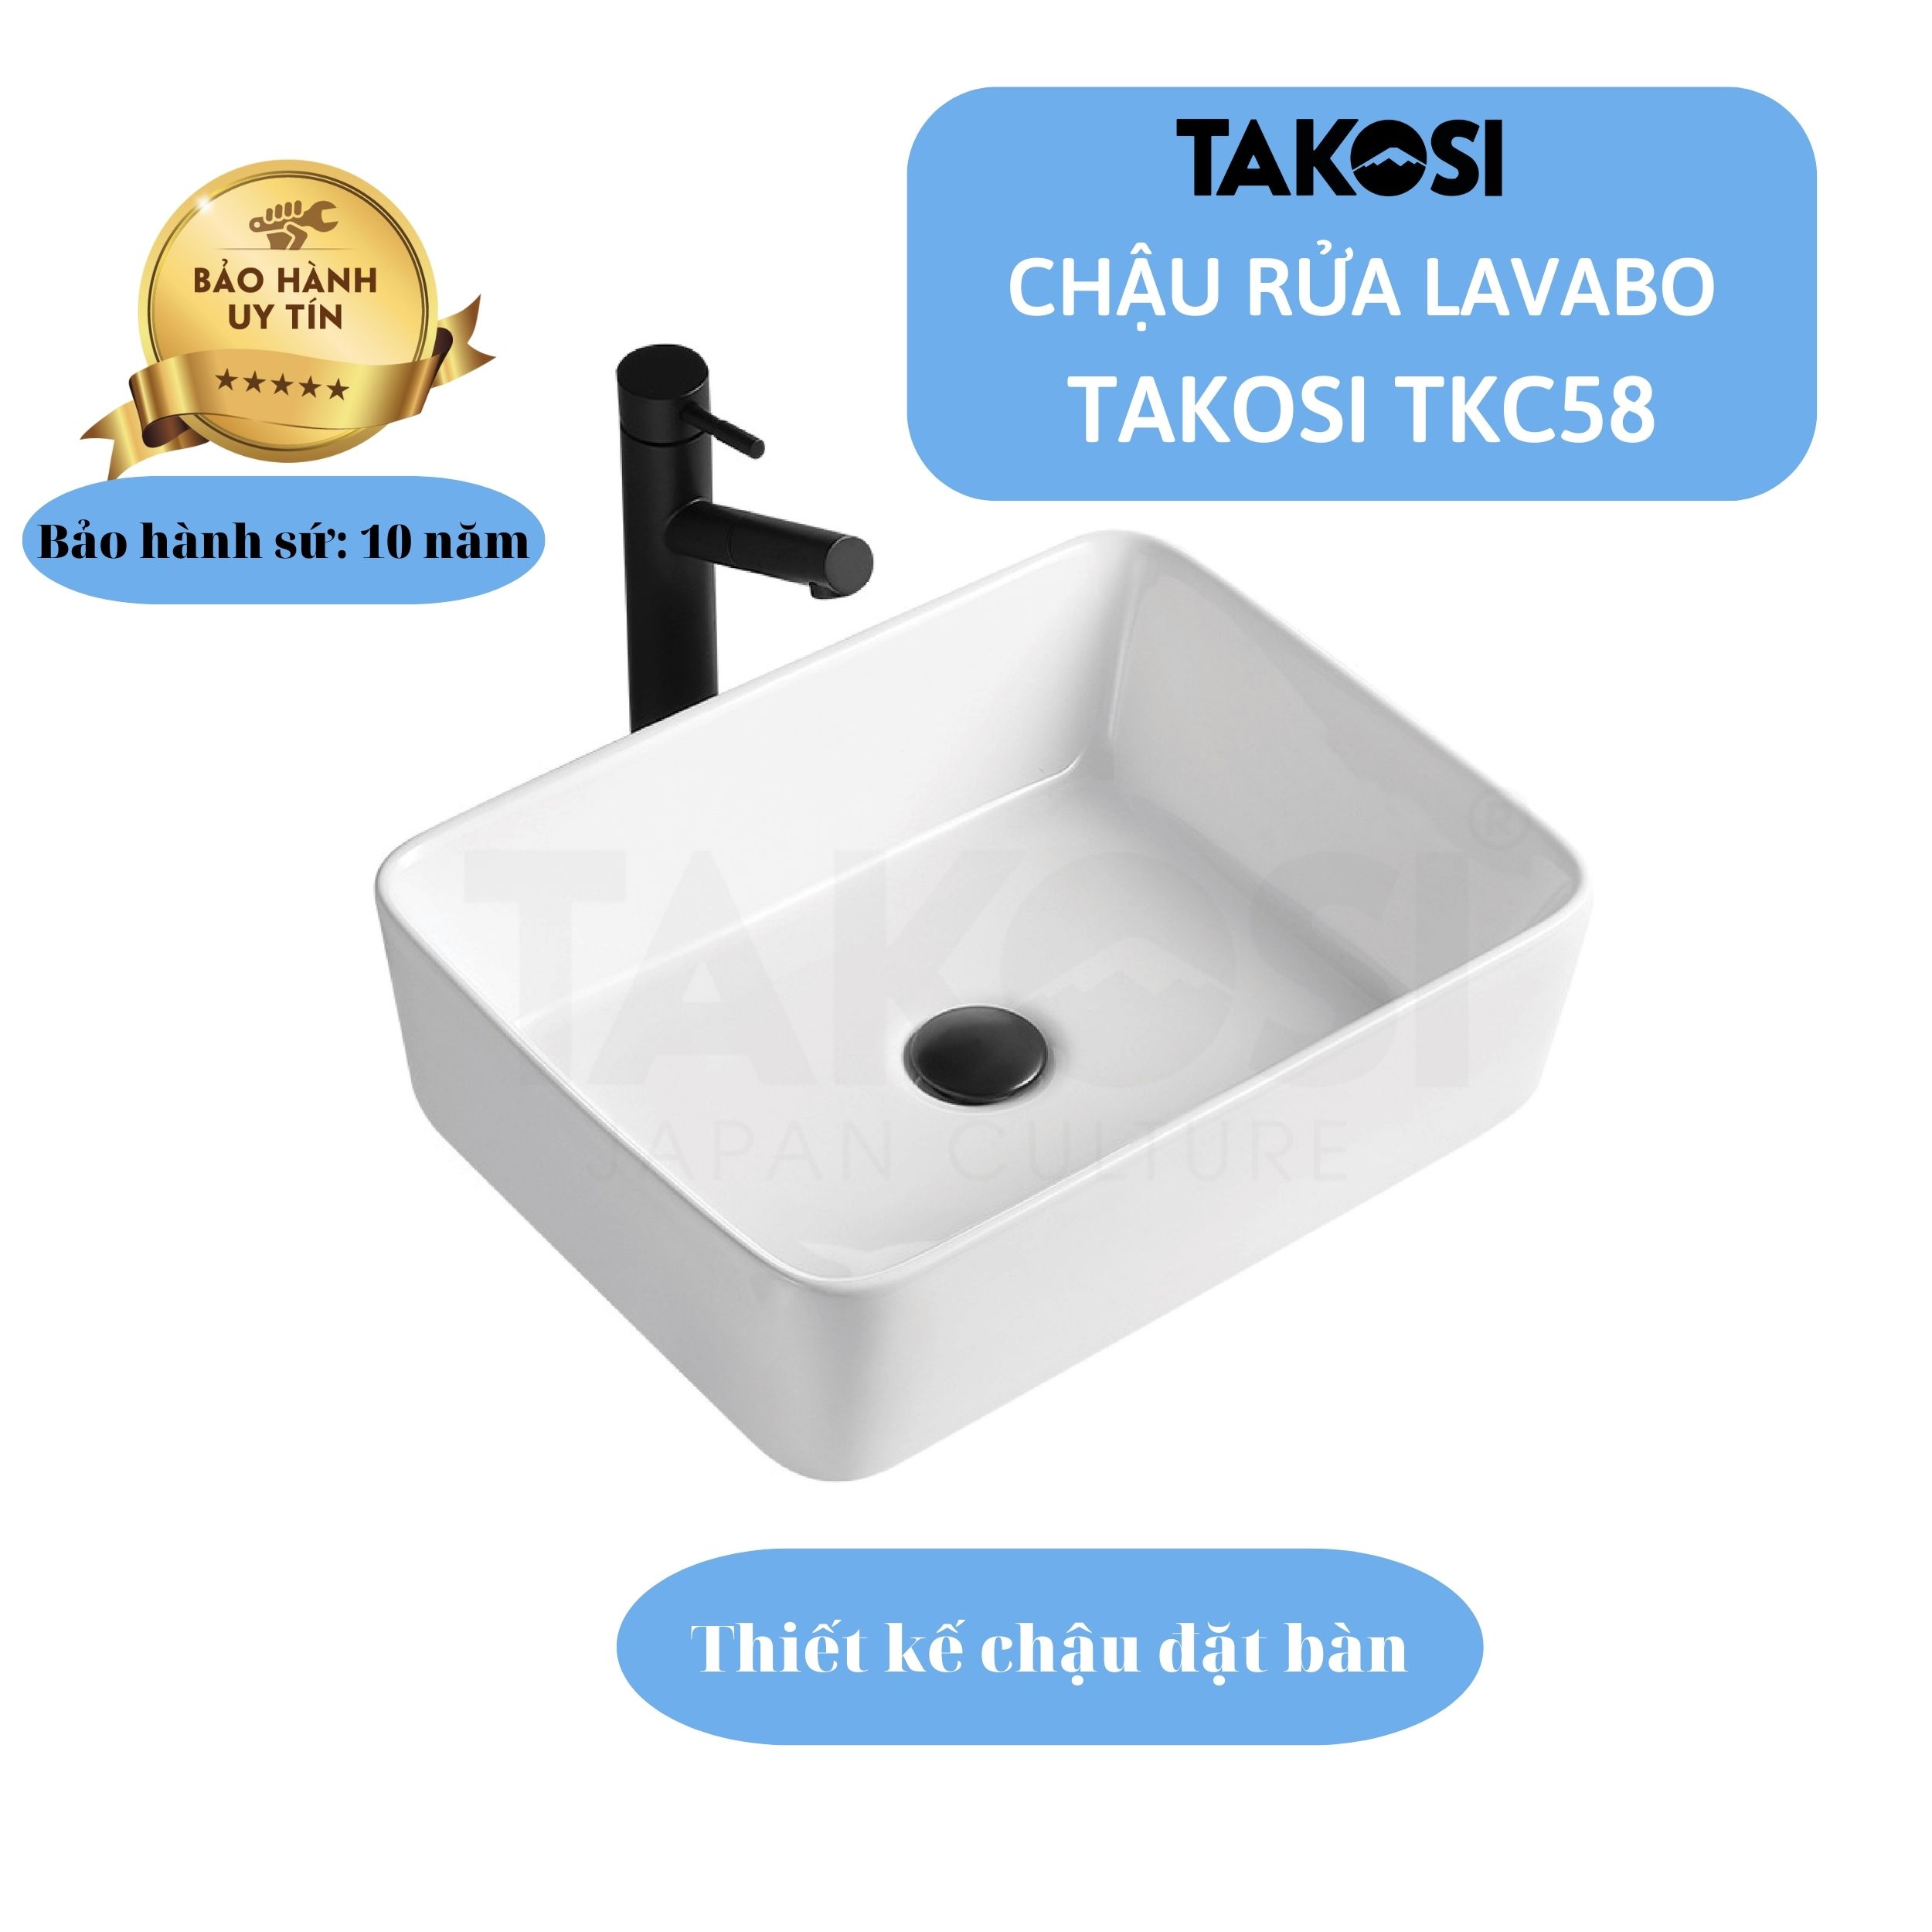 Chậu lavabo sứ, chậu rửa mặt phòng tắm chữ nhật Takosi TKC58 đặt bàn dùng gia đình, khách sạn hàng chính hãng bảo hành 10 năm